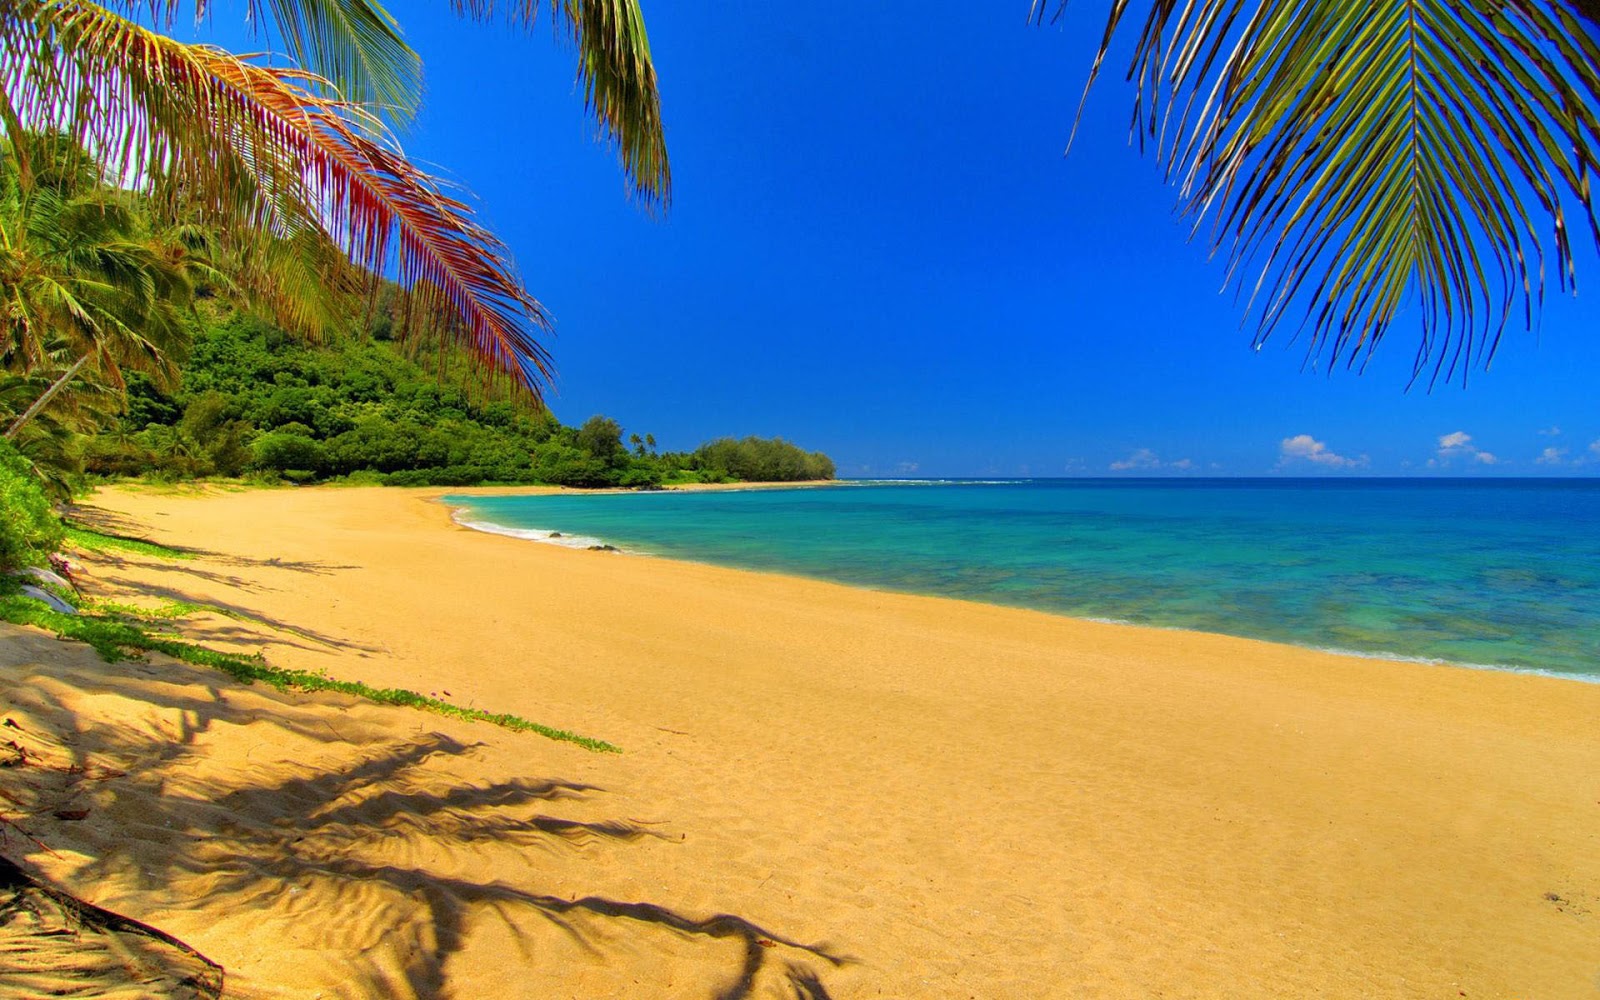 Kauai Hawaii Travel Guide And Info